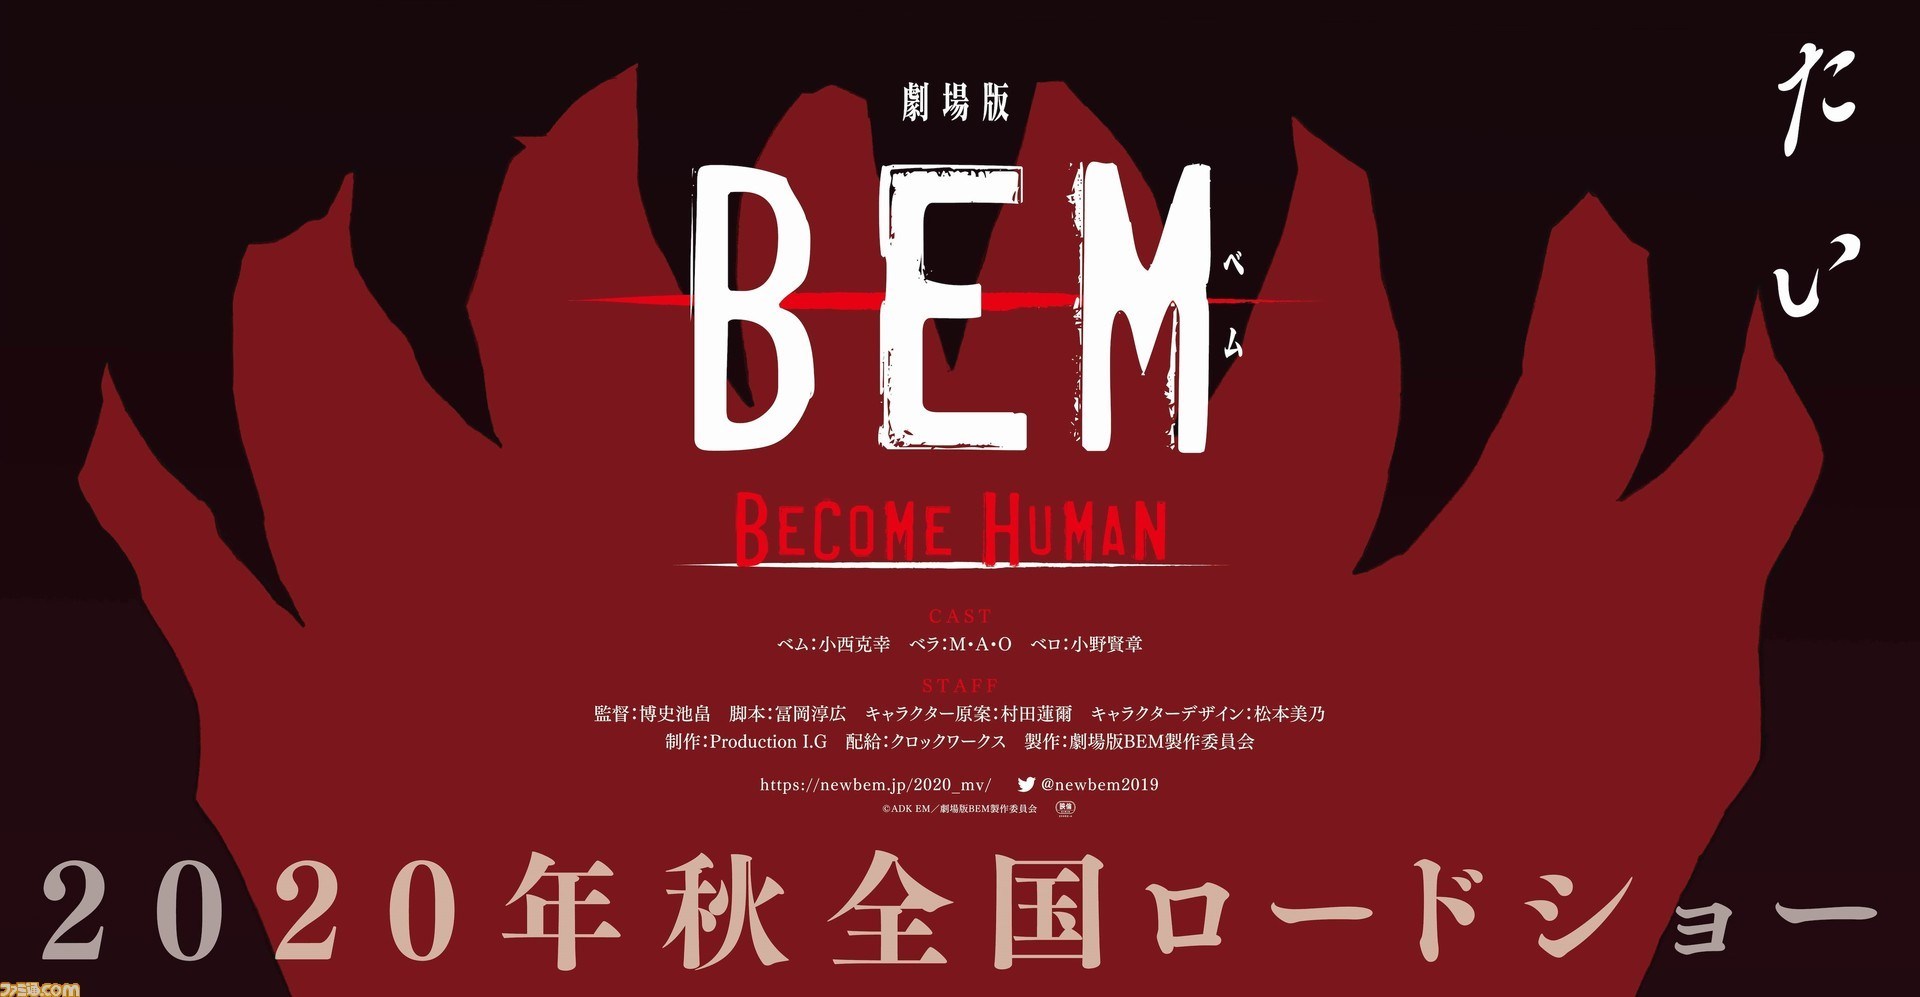 Gekijoban BEM Become Human film teaser trailer released